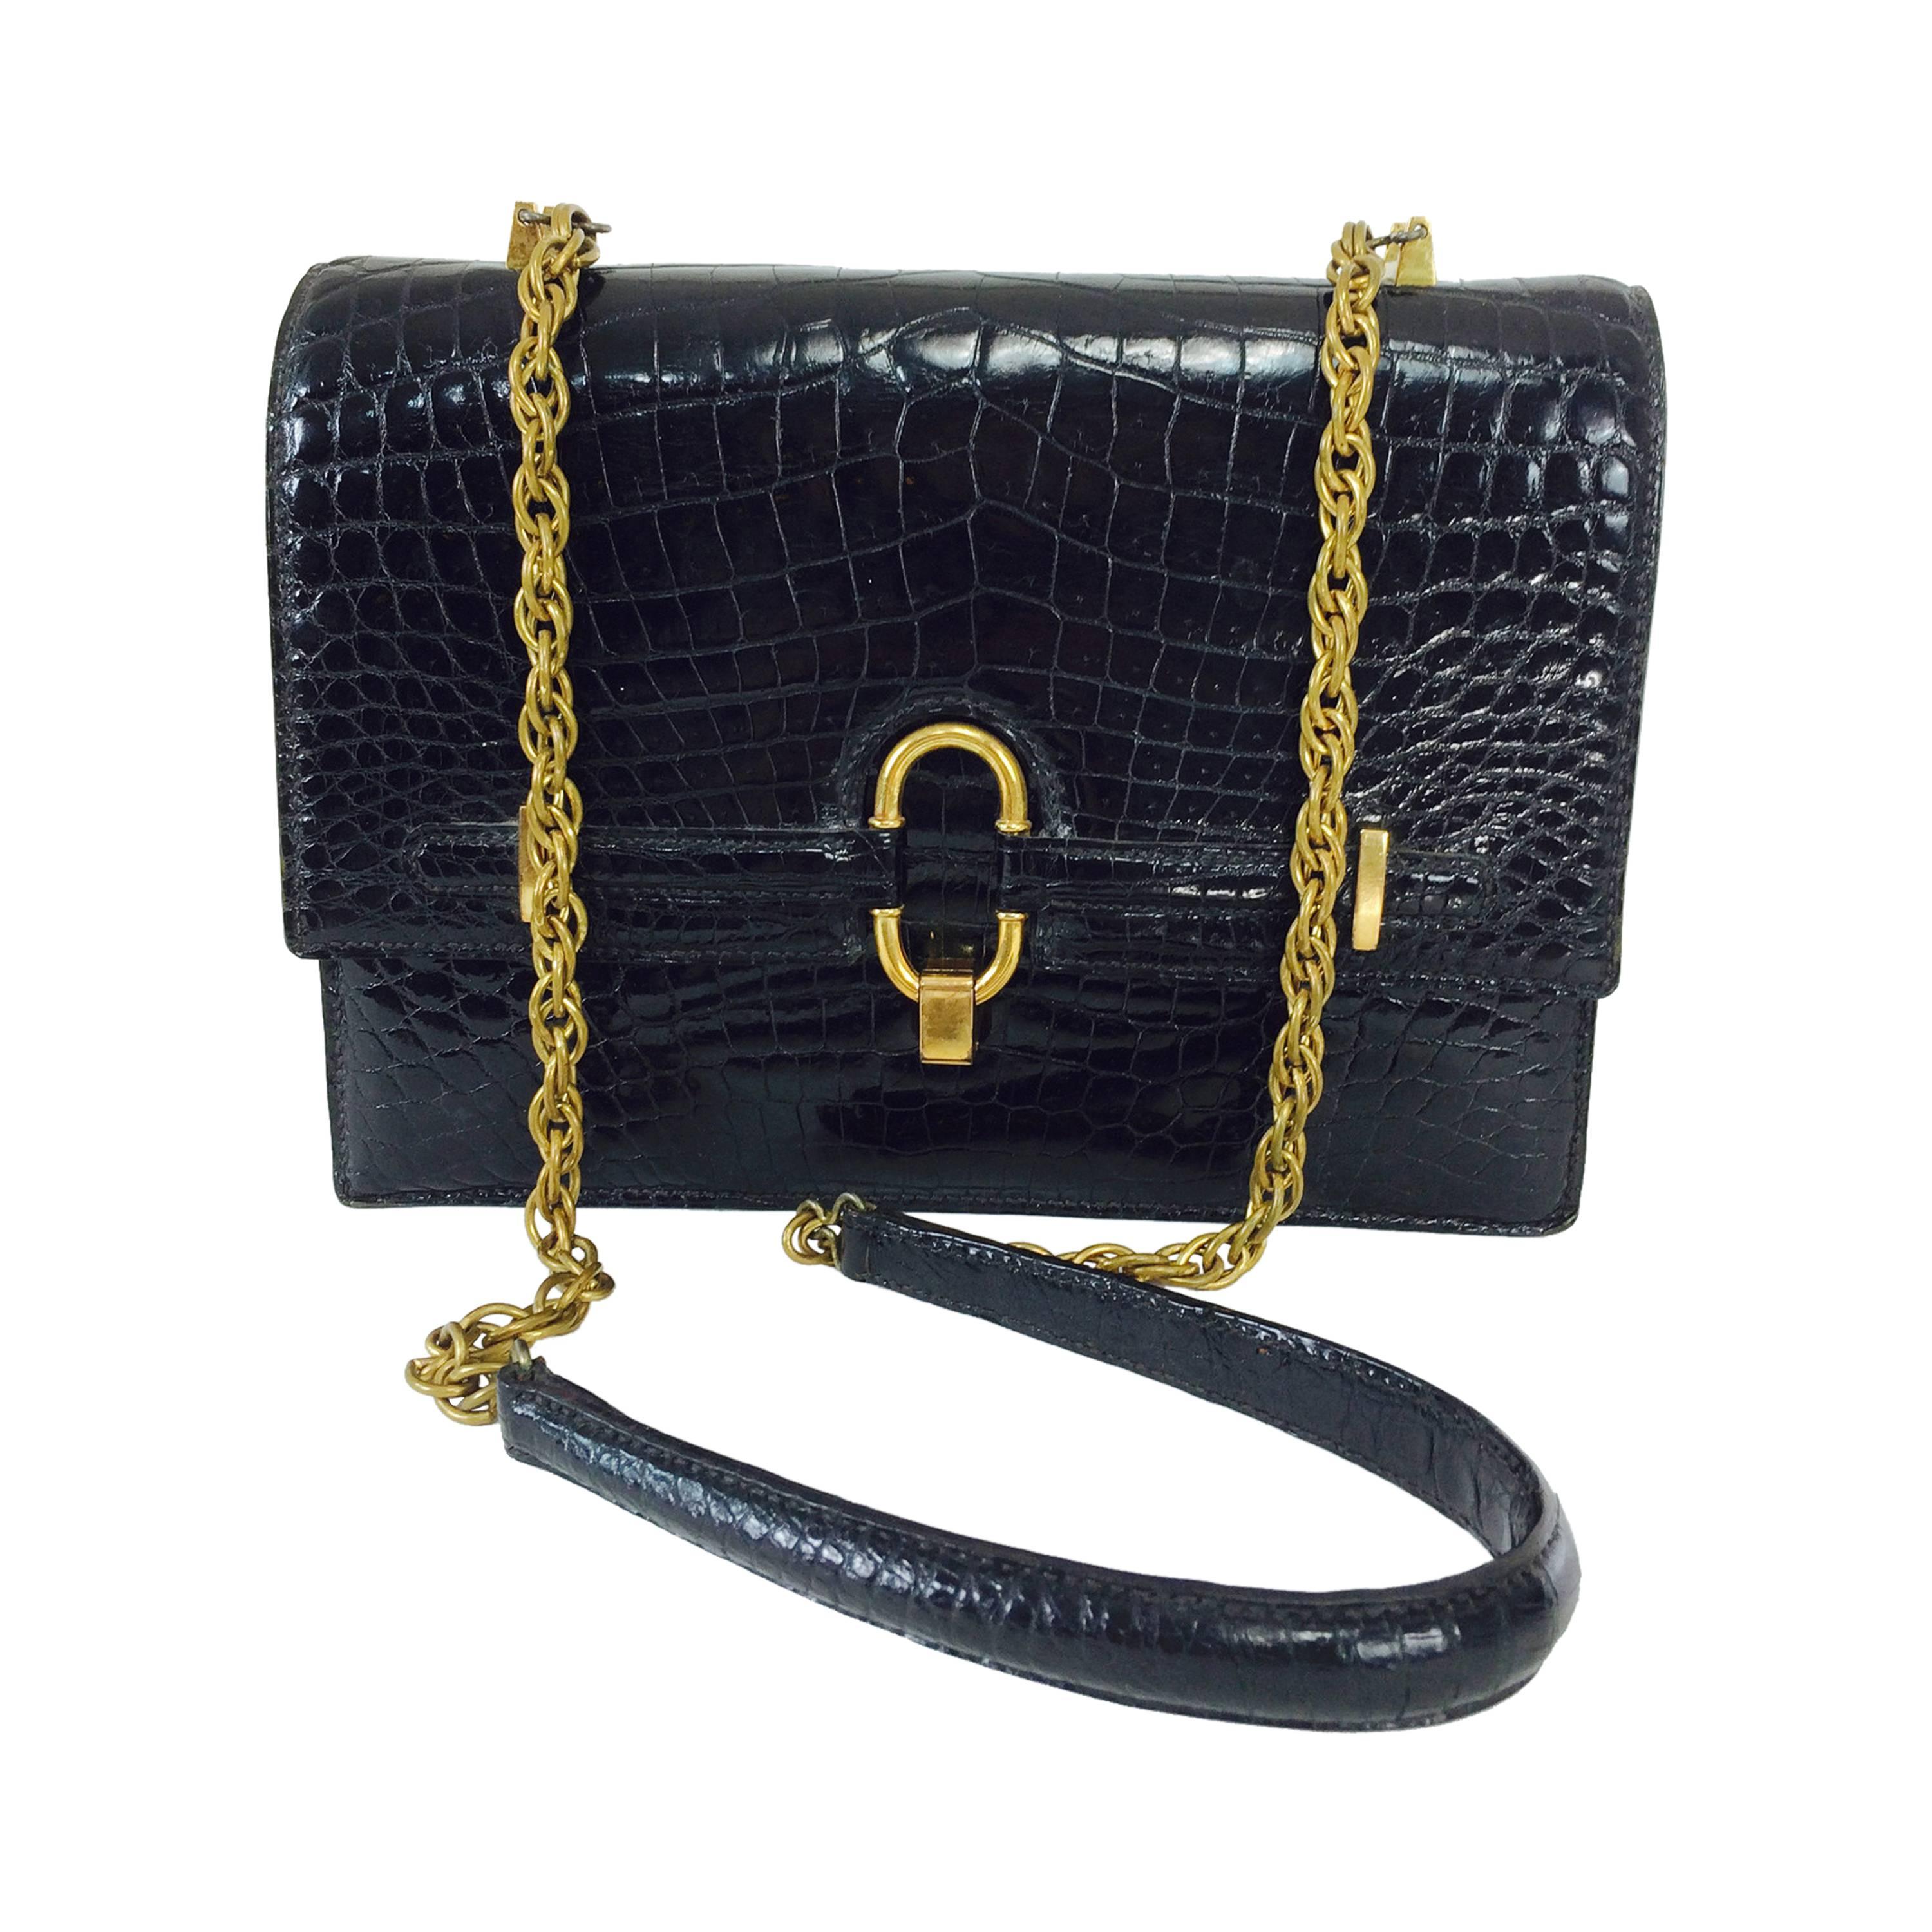 Crocodile shoulder bag with glazed black skins & gold plated hardware 1970s